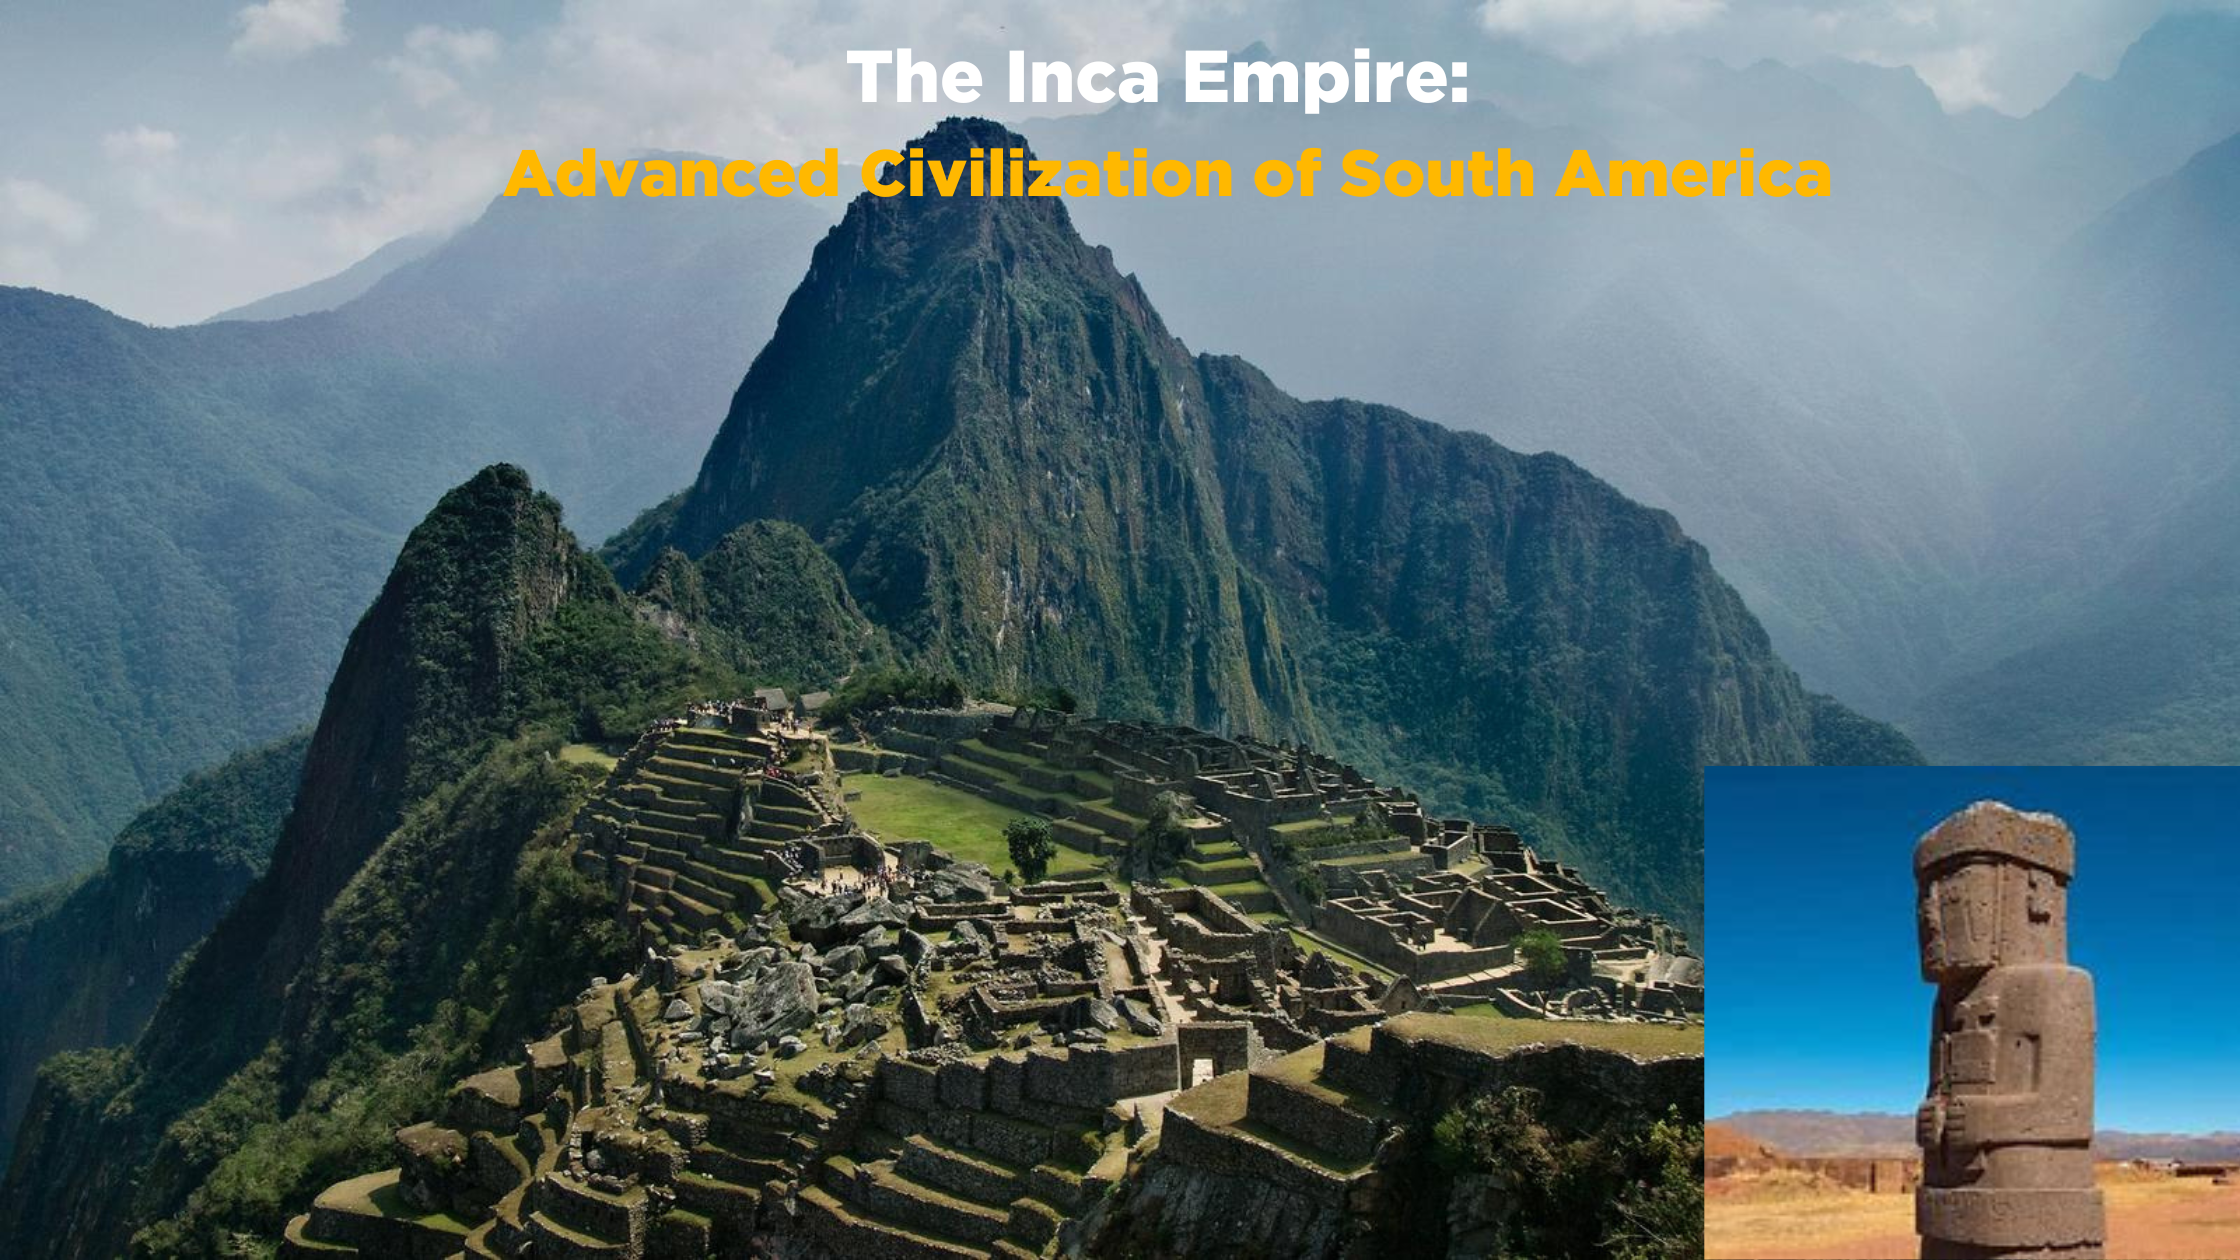 The Inca Empire: Advanced Civilization of South America